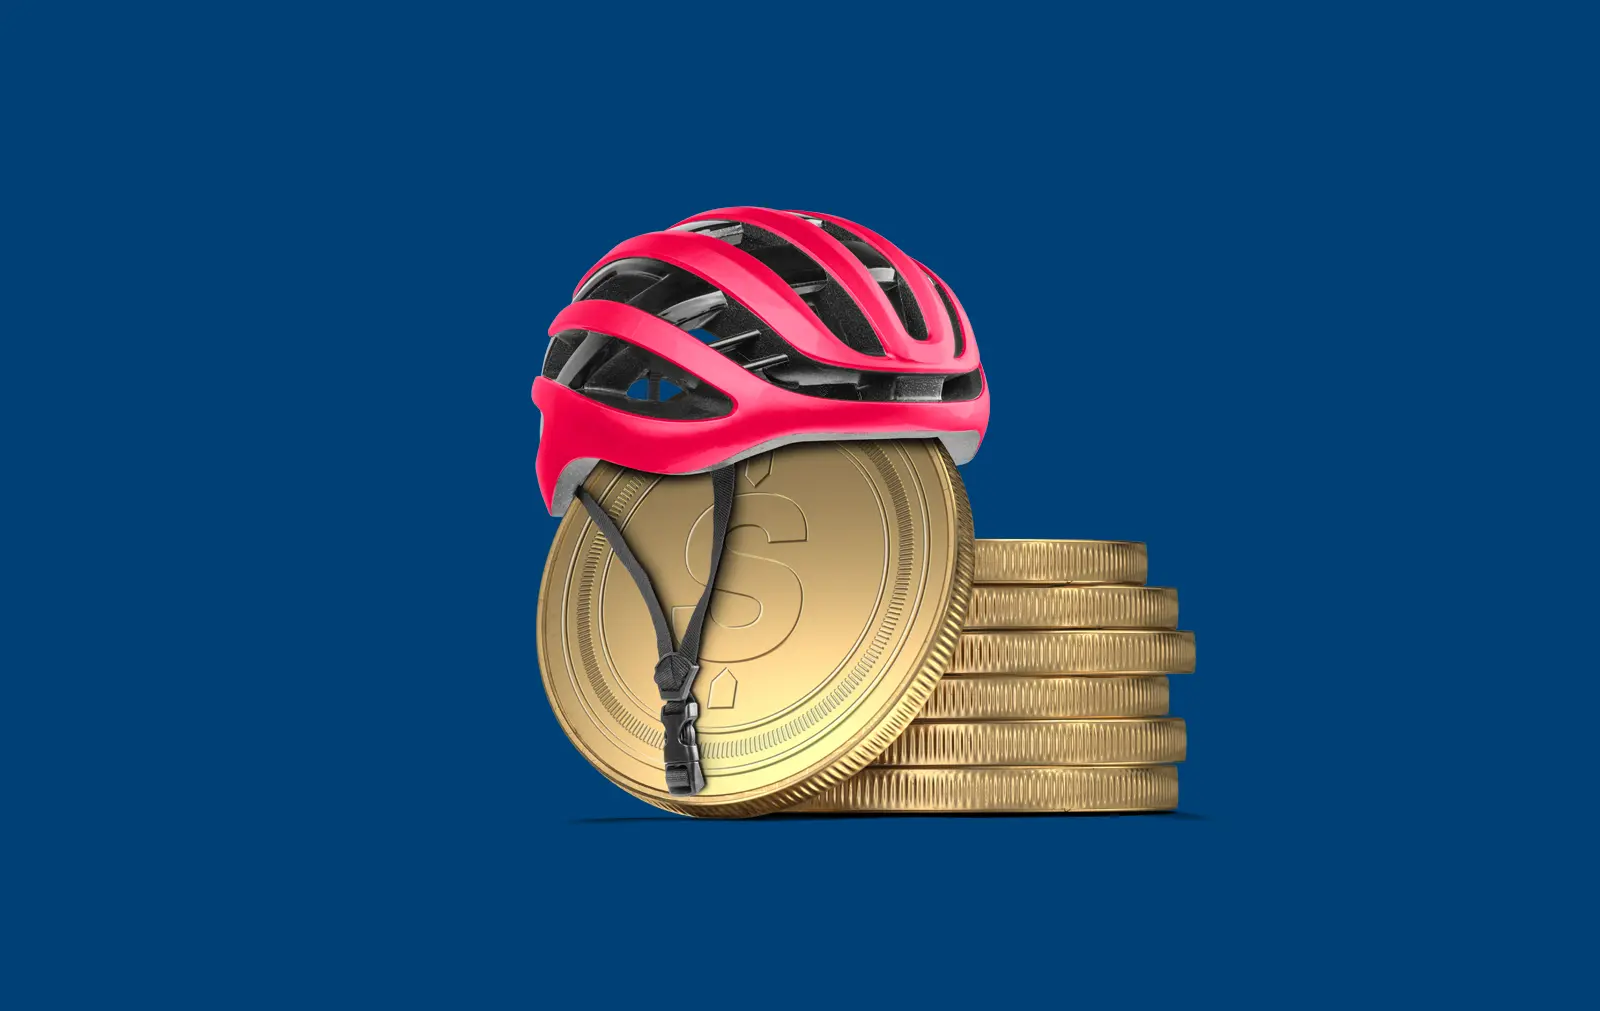 Un casque de vélo est posé sur une pile de pièces de monnaie.